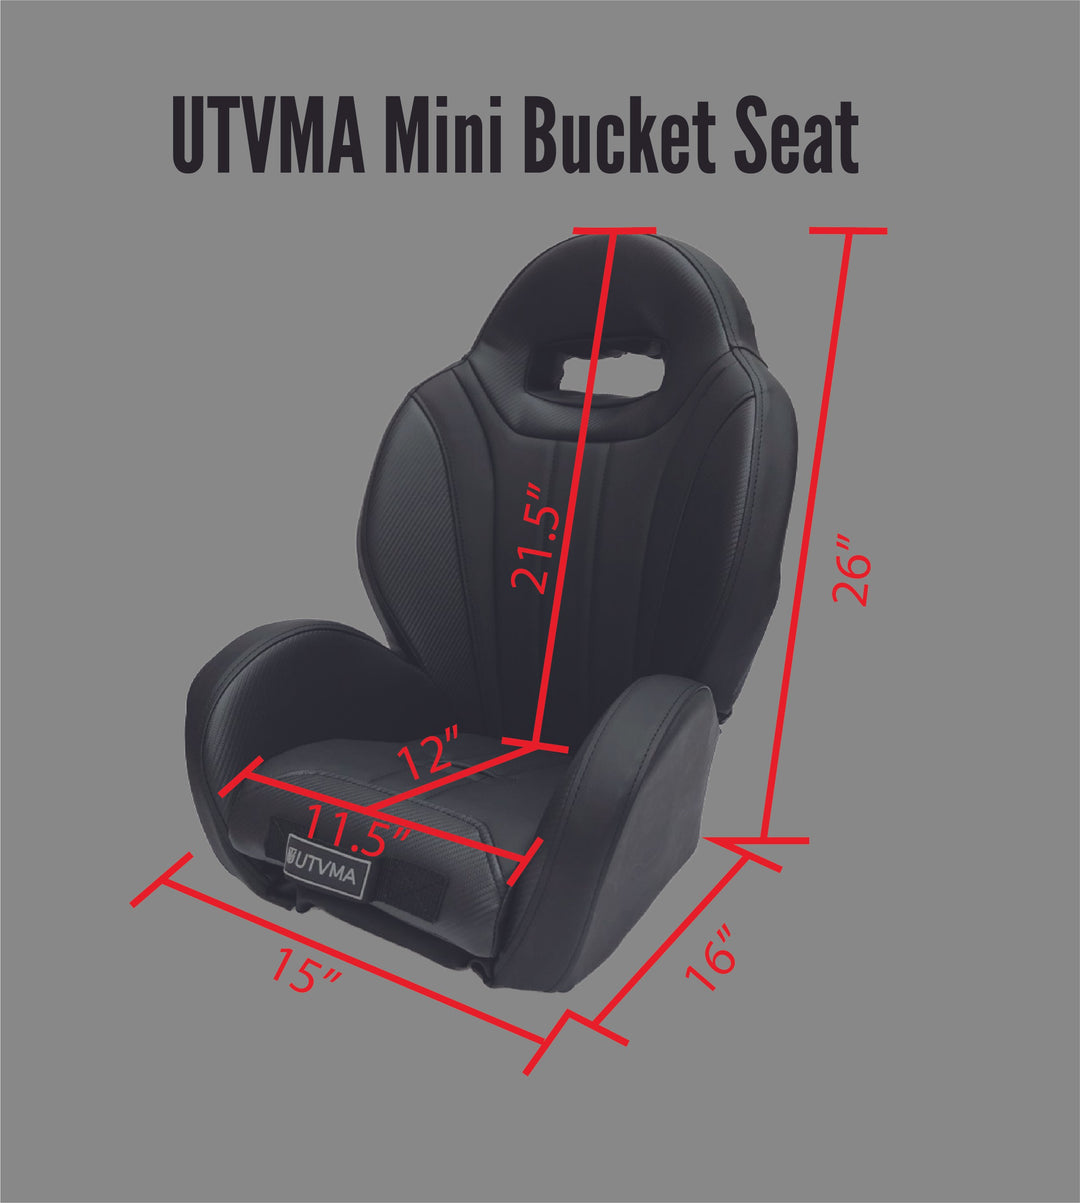 Mini Bucket Seat | UTVMA